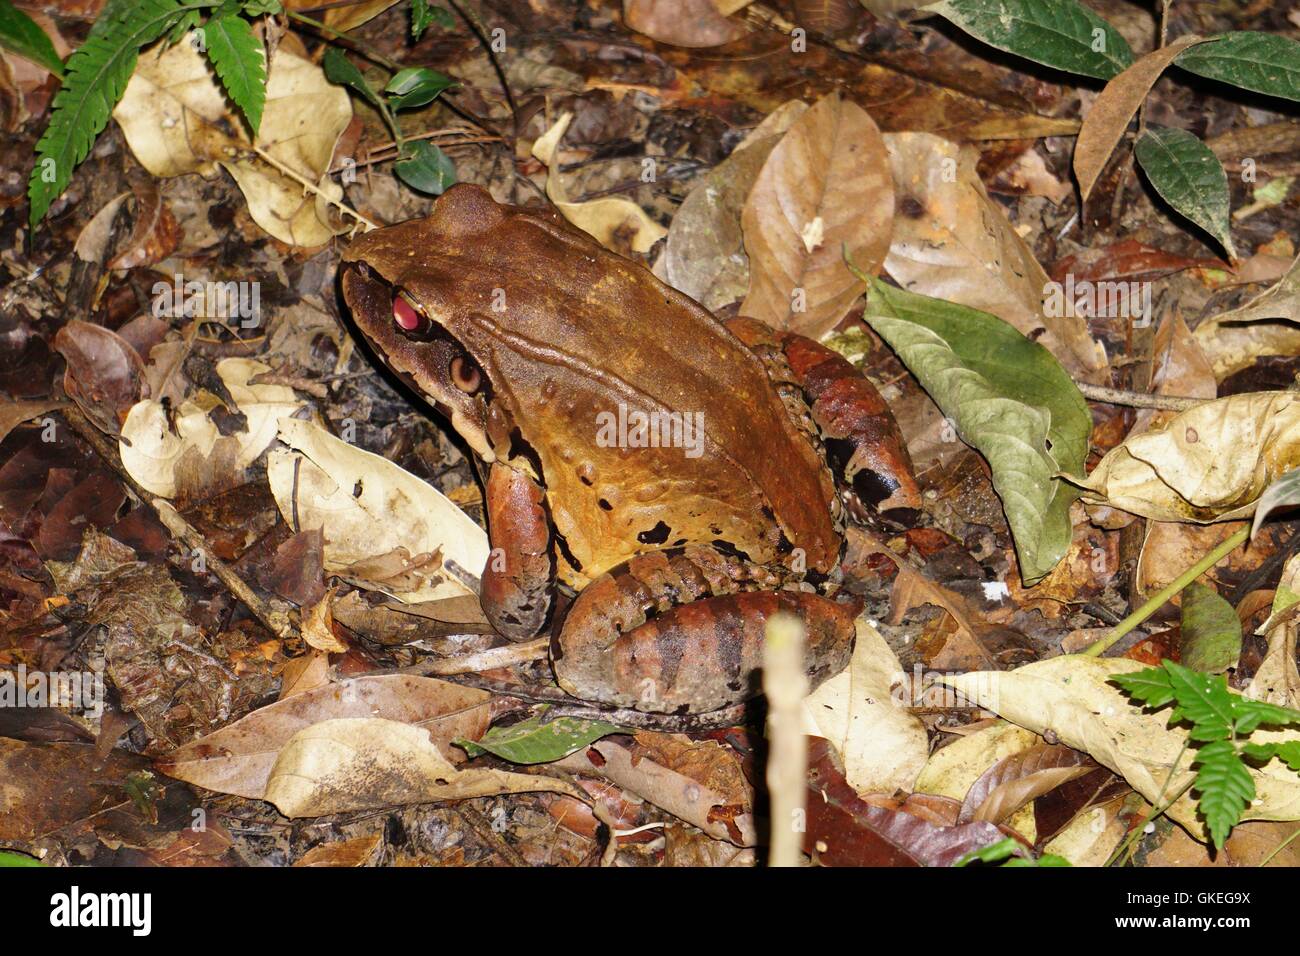 Vergiften Sie Dart Frog (auch bekannt als Dart-Poison Frosch, vergiften Frosch oder früher bekannt als poison Arrow Frog). Fotografiert im peruanischen Amazonasgebiet Stockfoto